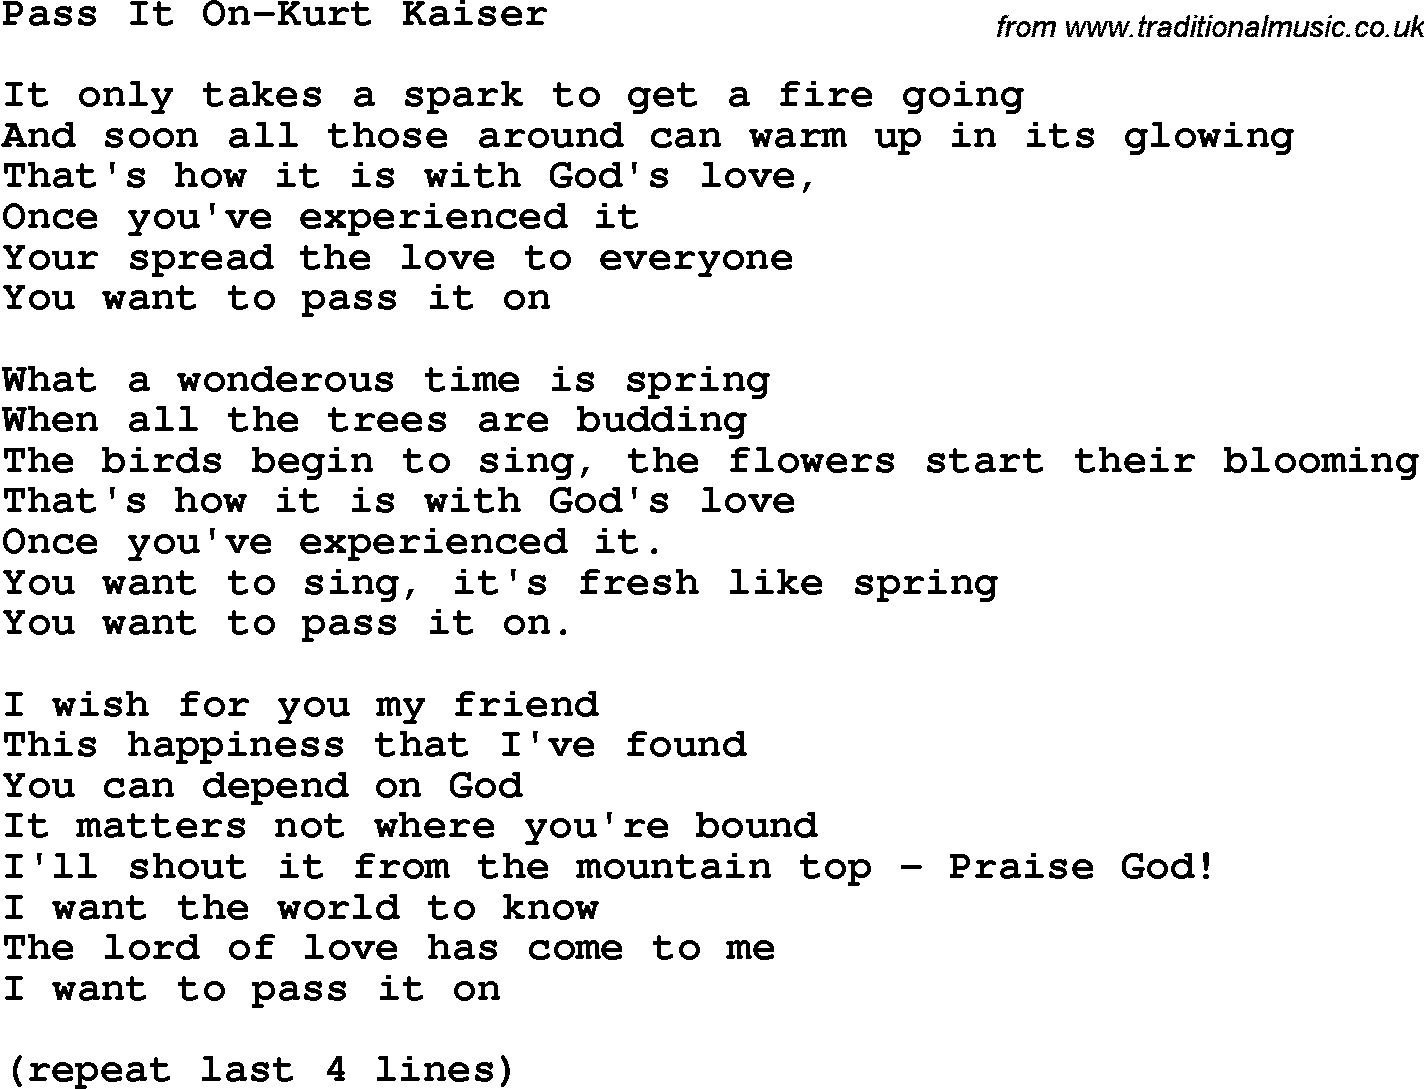 Country, Southern and Bluegrass Gospel Song Pass It On-Kurt Kaiser lyrics 